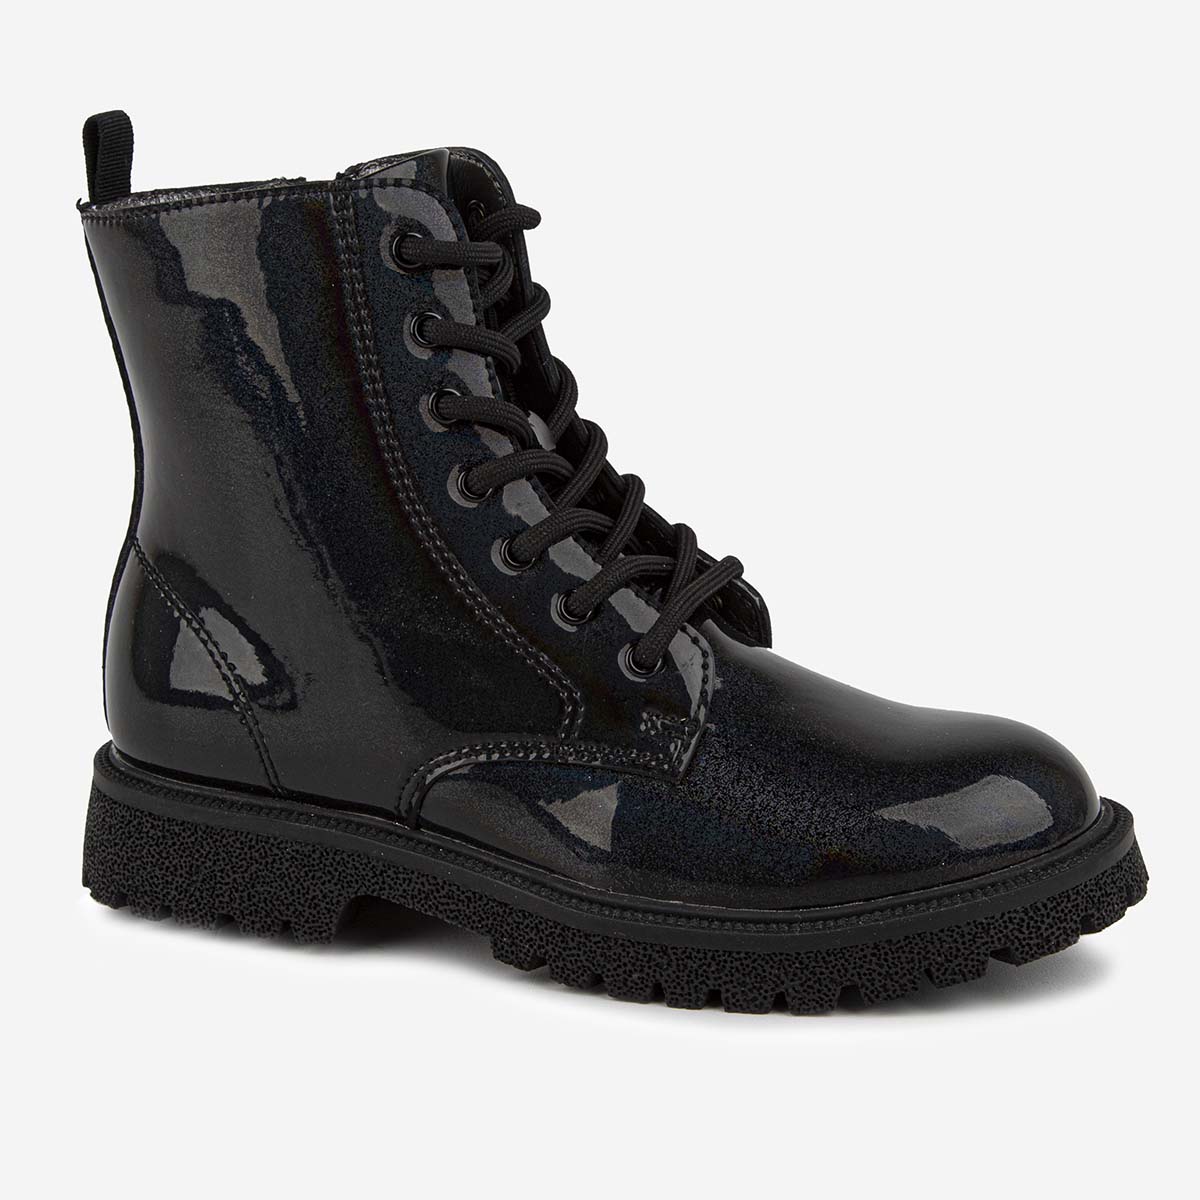 Ботинки Kapika 52556ук, цвет черный, размер 30